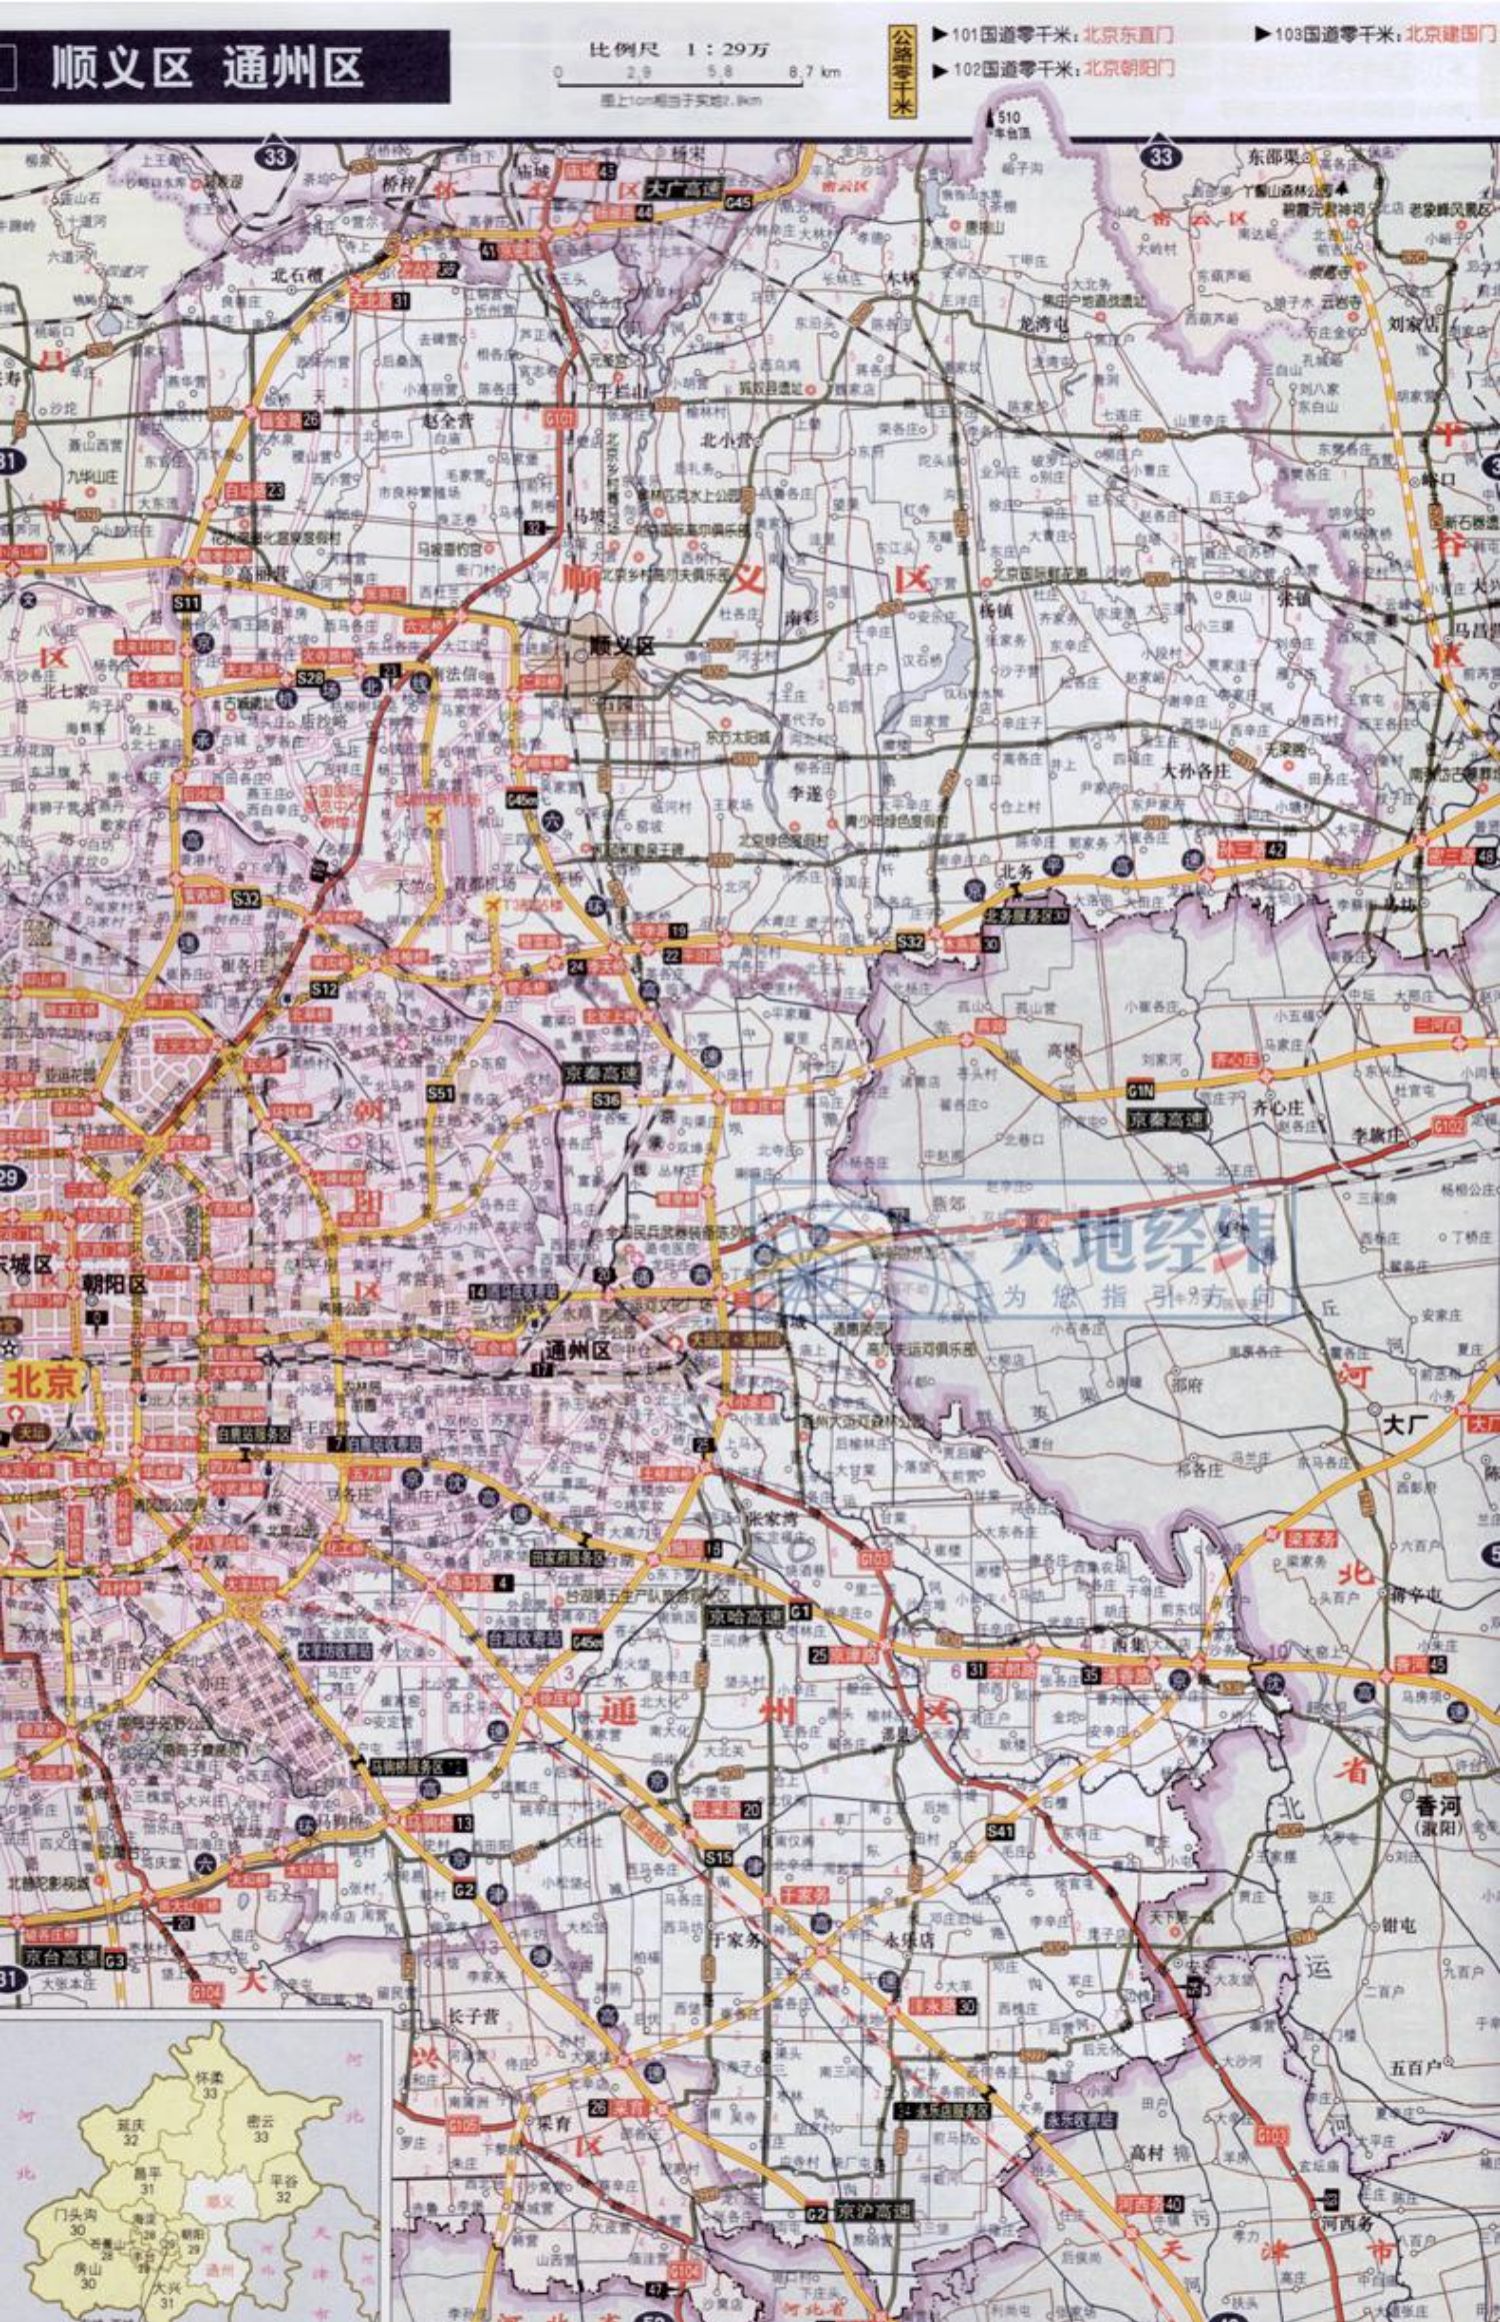 【买一赠三】 2021全新版中国高速公路及城乡公路网地图集超级详查版